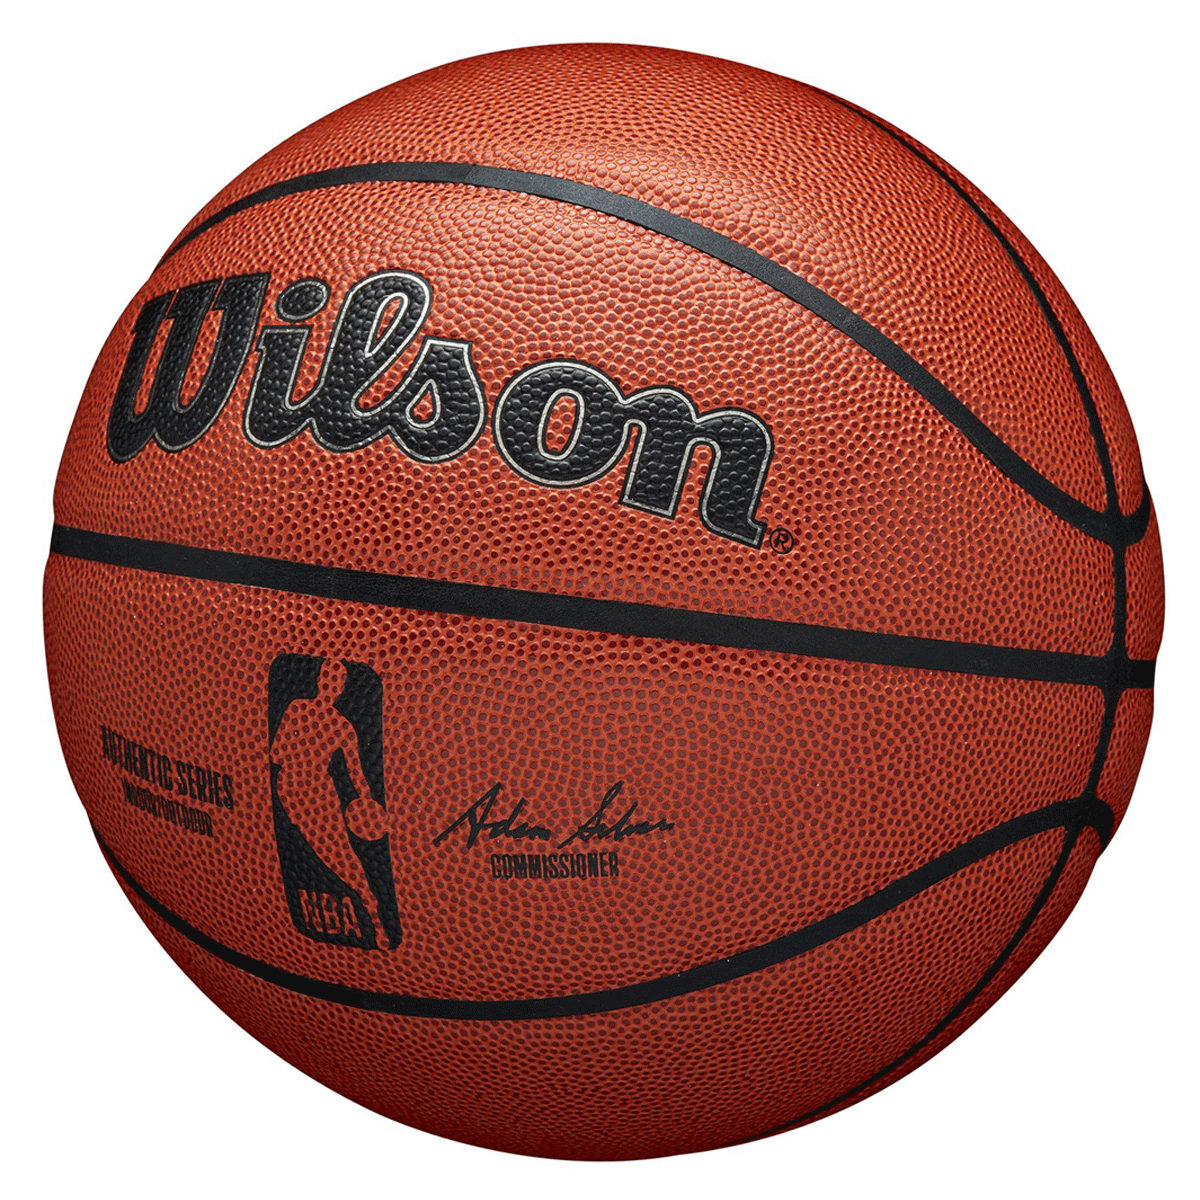 Wilson NBA Authentic Series Indoor/Outdoor Basketball Brown 7 | Rebel Sport